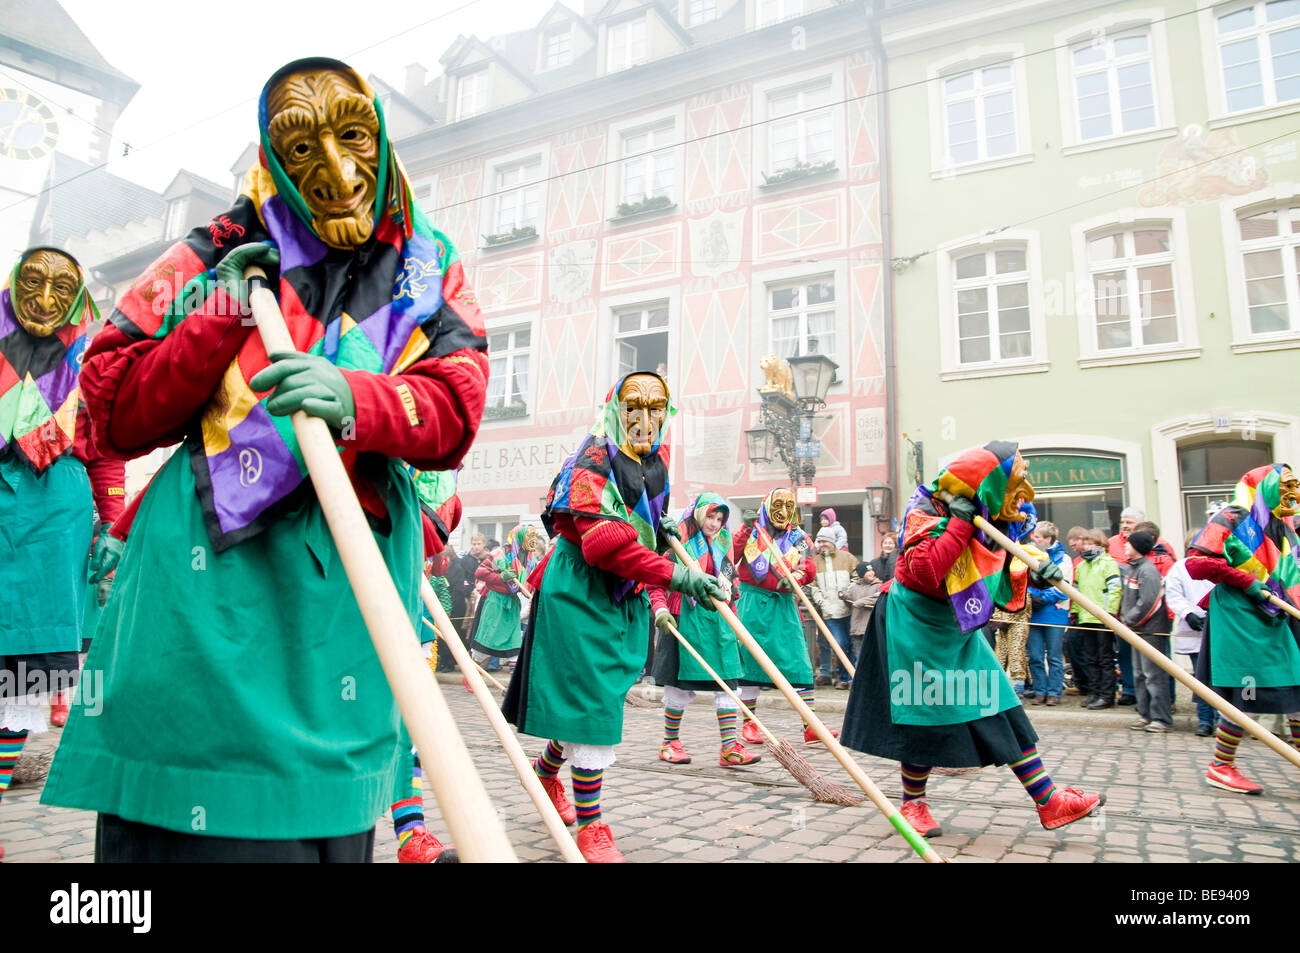 Carnaval alémanique, sorcières, Freiburg, Germany, Europe Banque D'Images